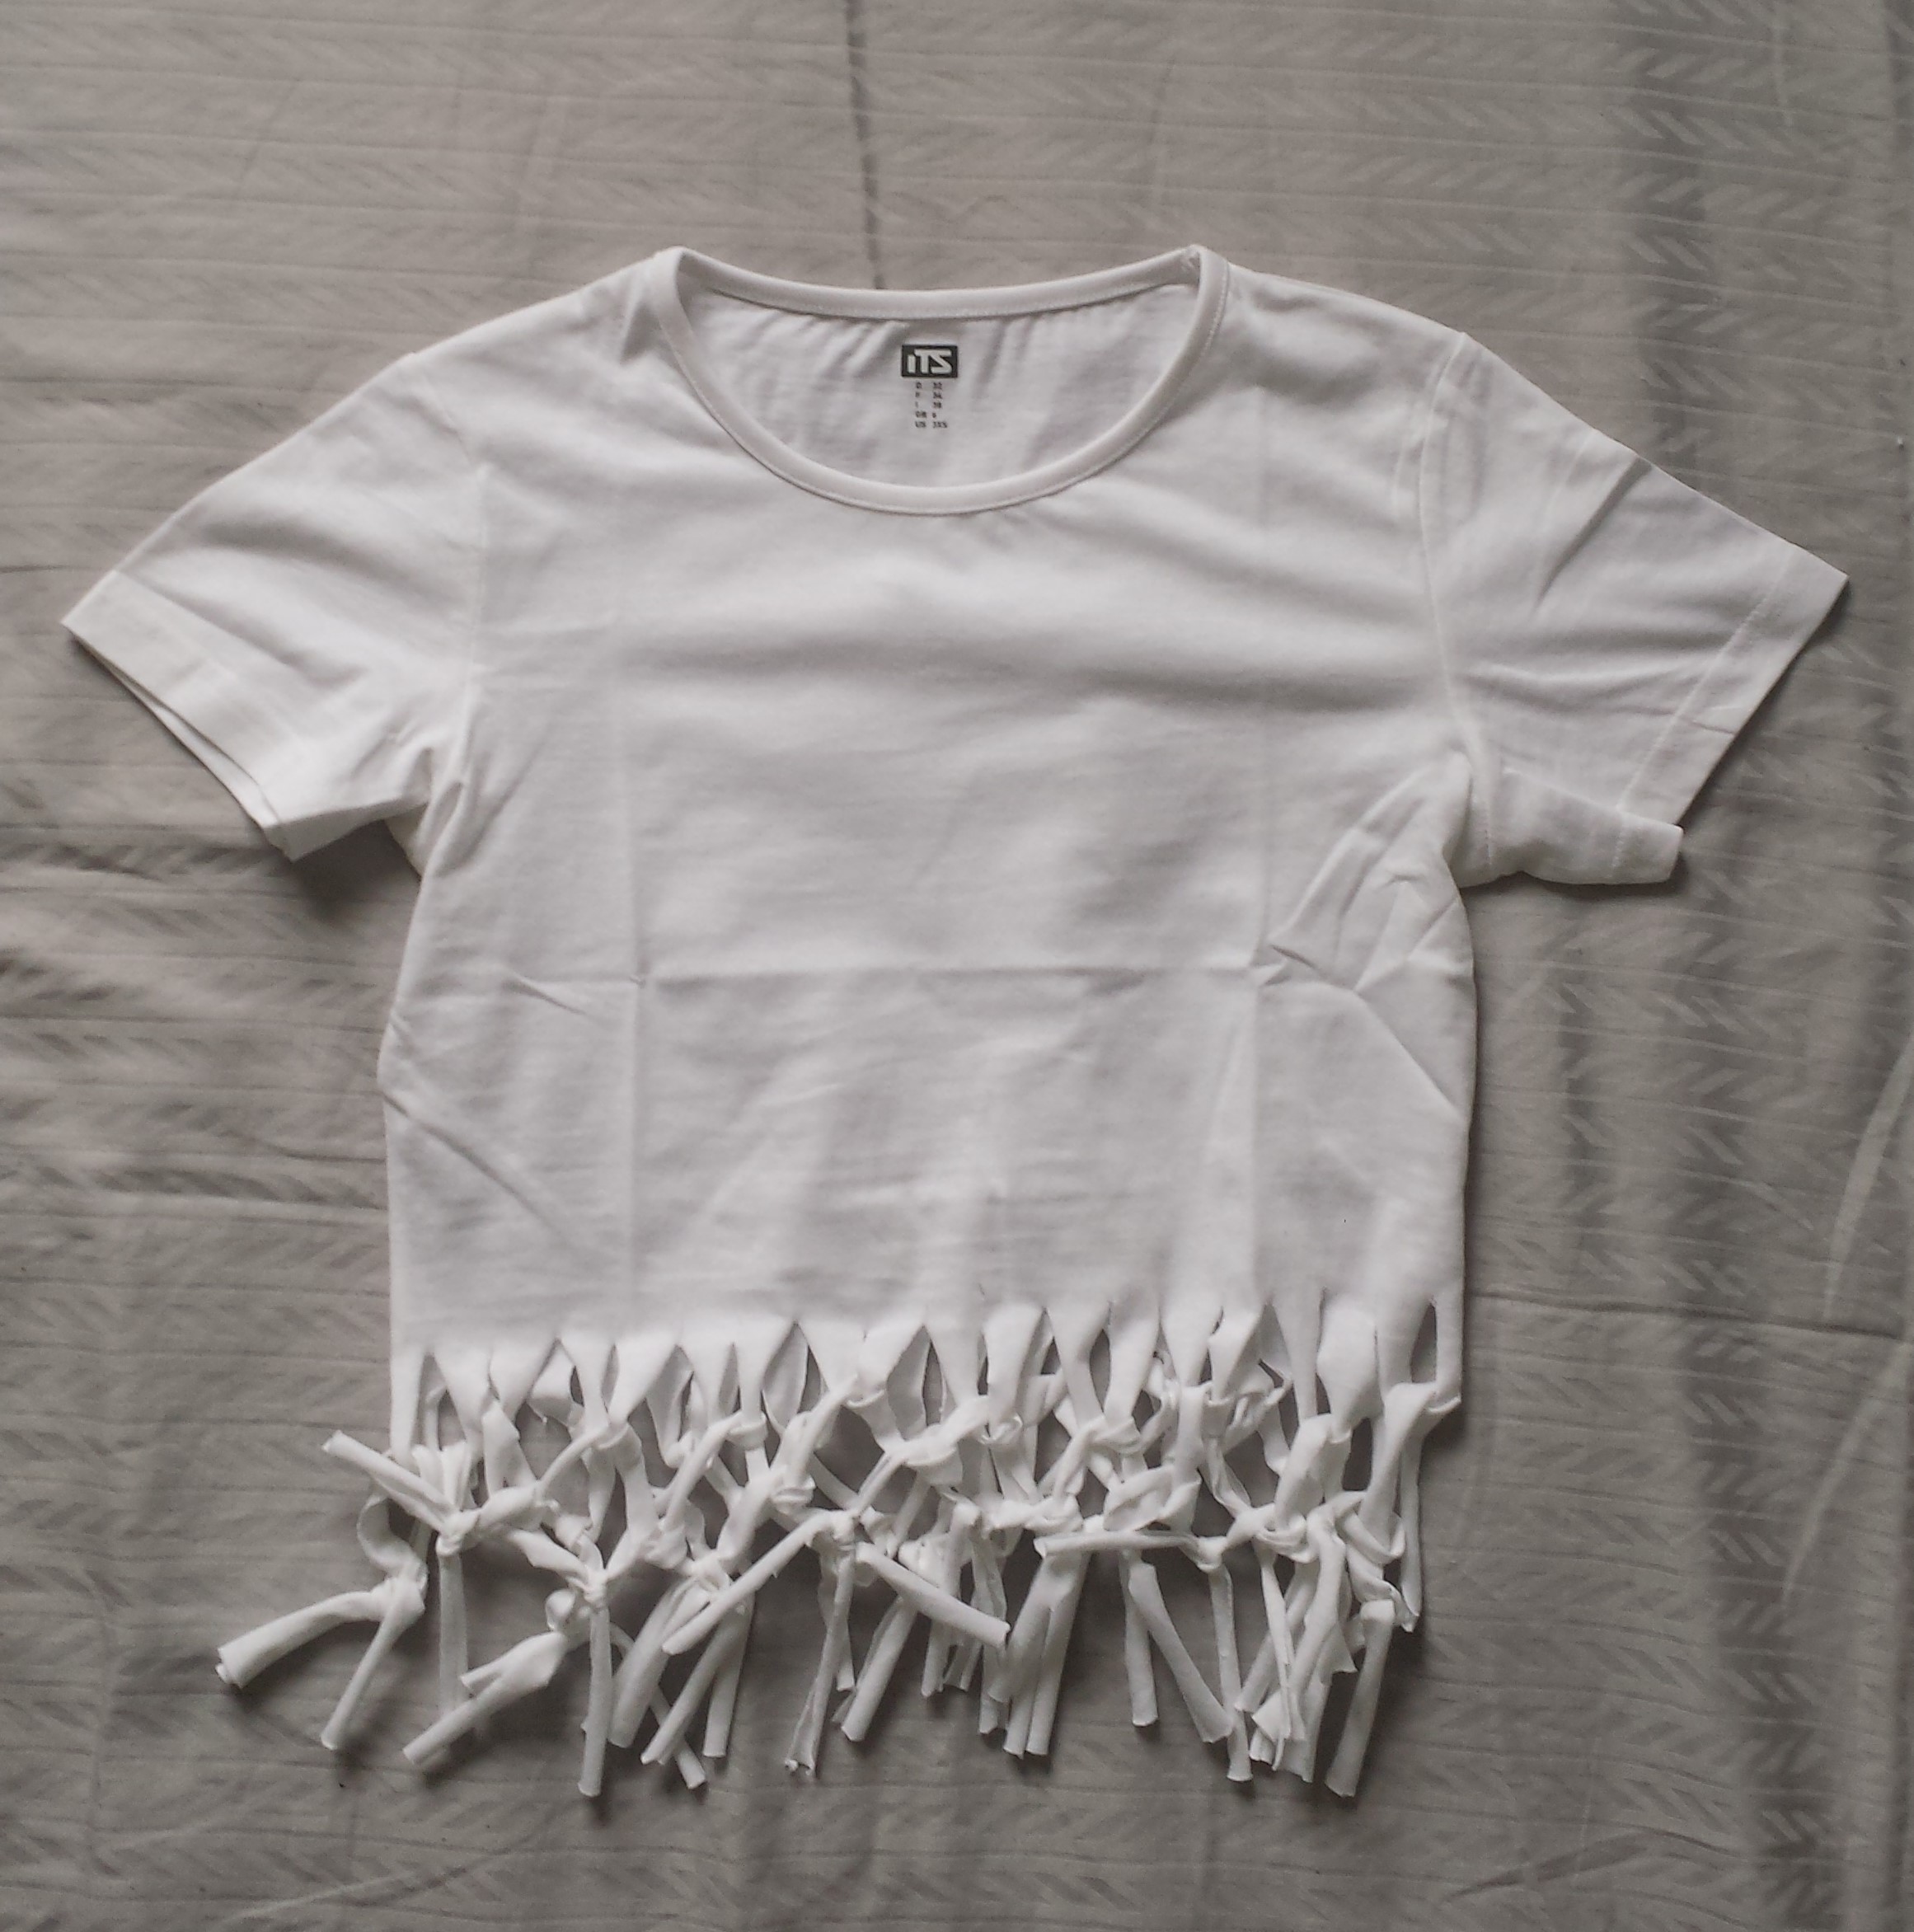 Réaliser un t-shirt "crop top" effet crochet ! - Le blog des découvertes